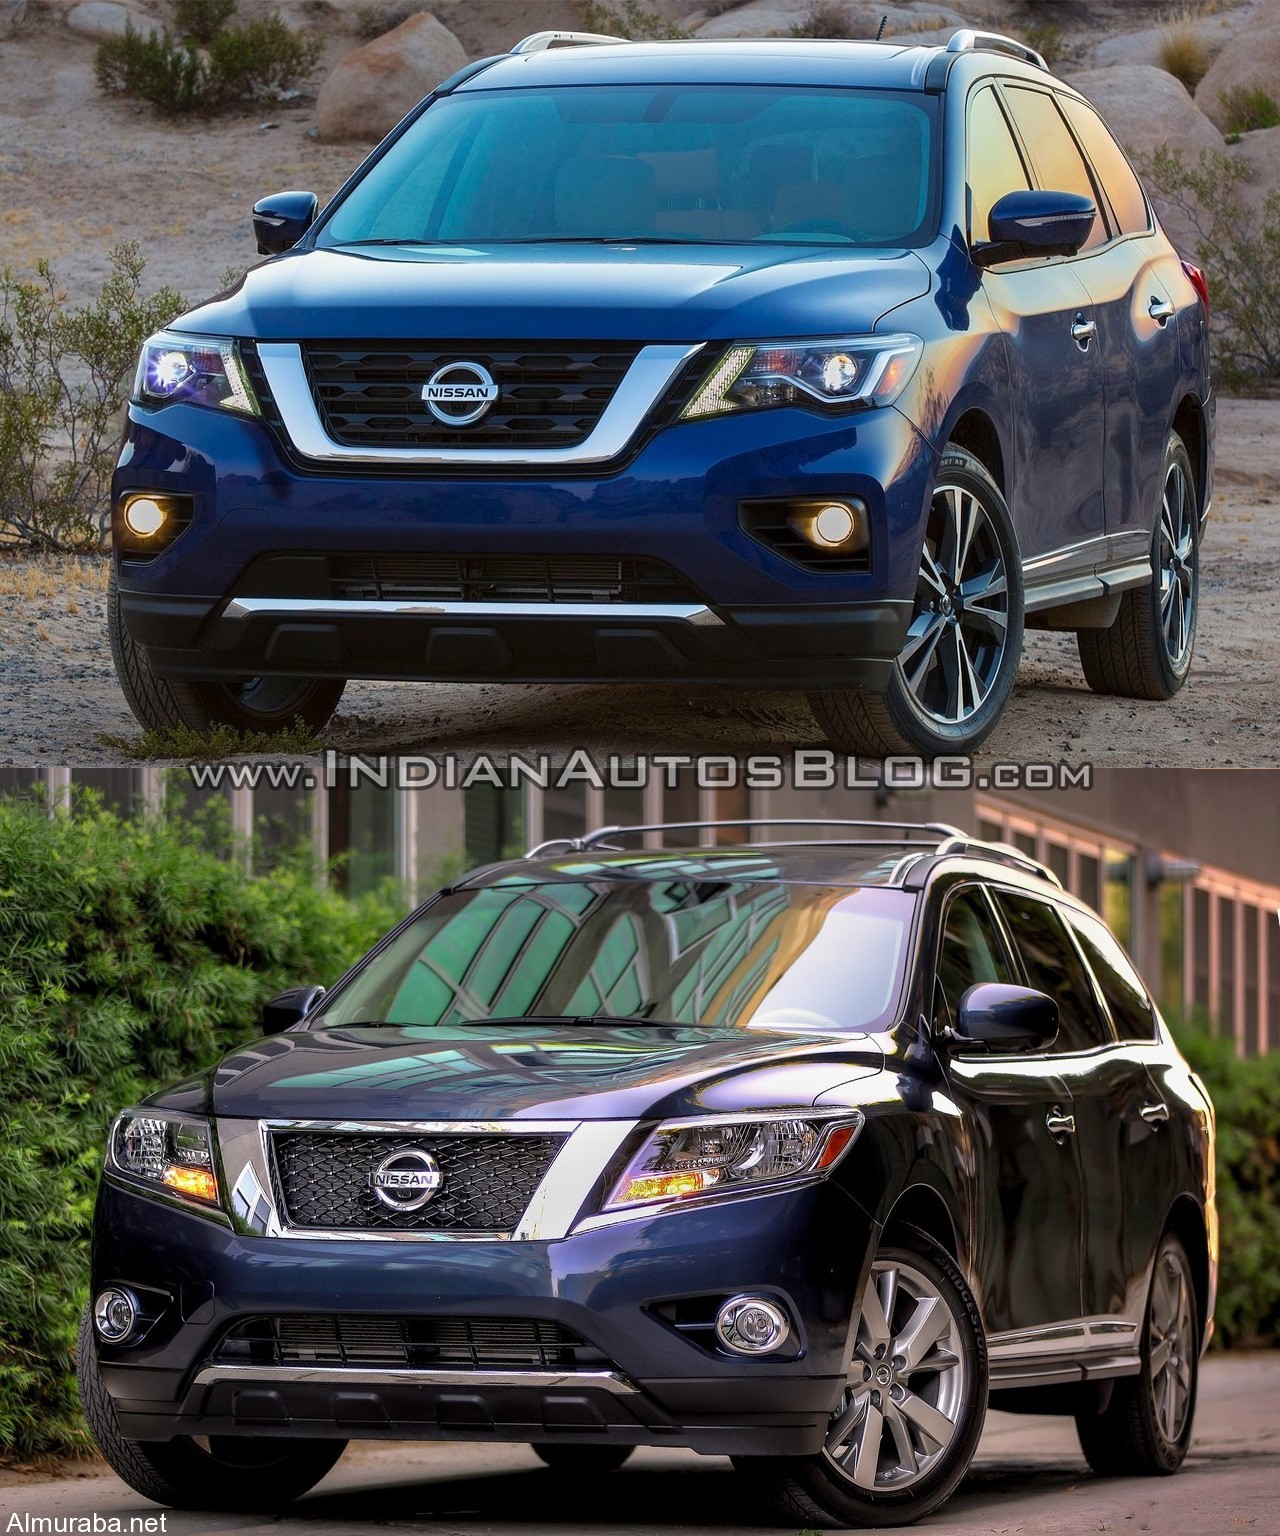 "مقارنة بالصور" بين موديلي "نيسان" باثفايندر 2017 و 2016 Nissan Pathfinder 5